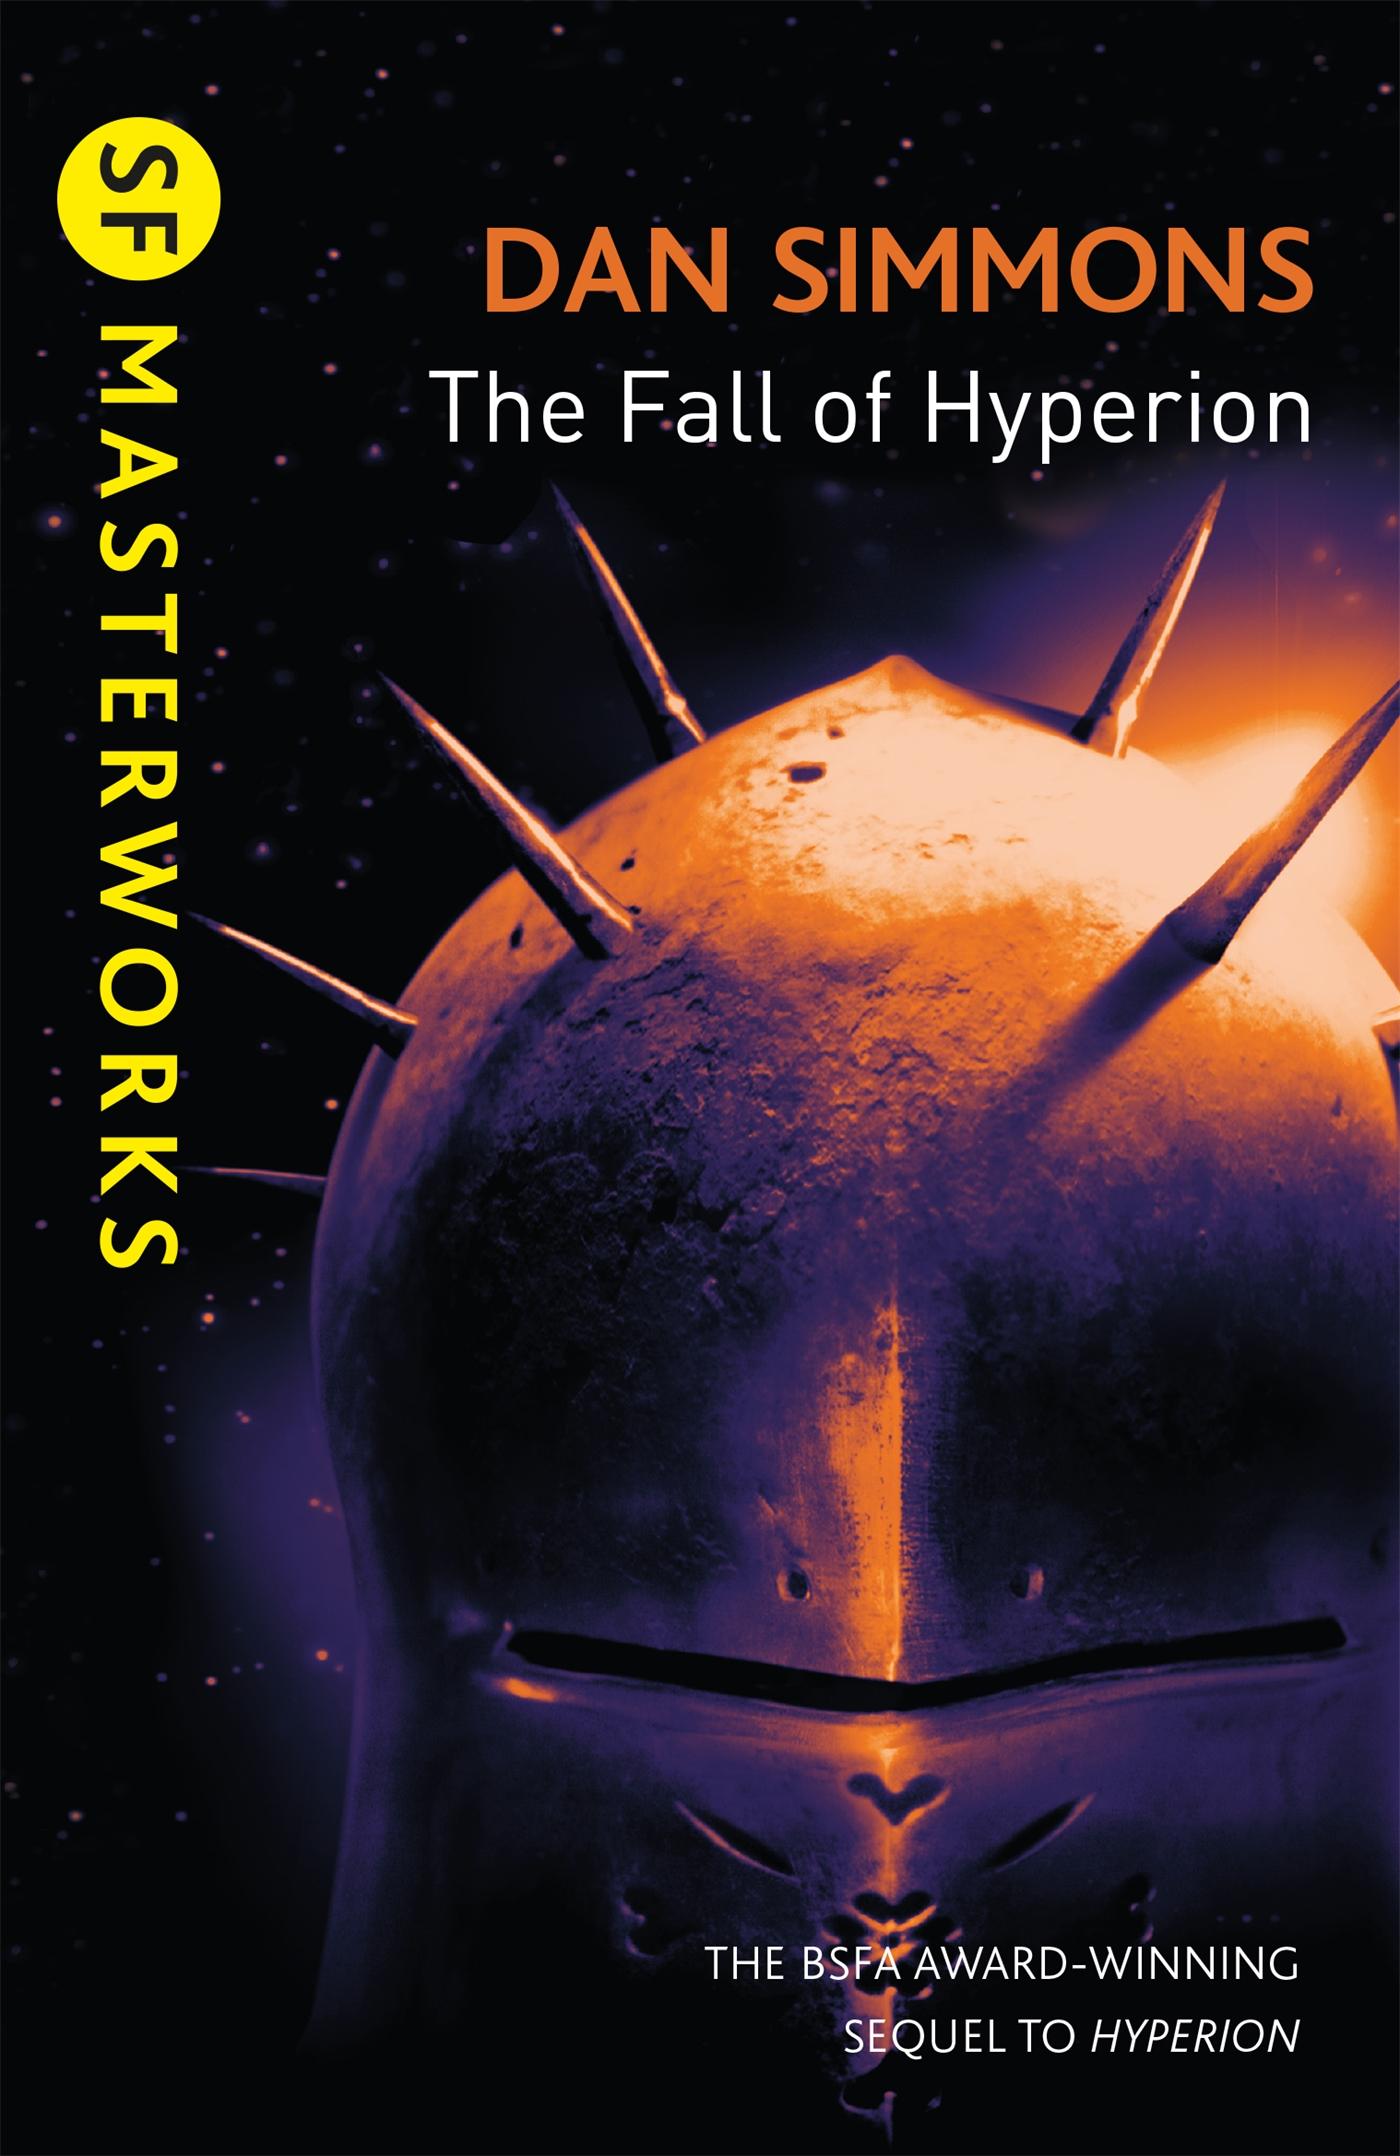 The Fall of Hyperion / Dan Simmons / Taschenbuch / Kartoniert / Broschiert / Englisch / 2012 / Orion Publishing Co / EAN 9780575099487 - Simmons, Dan